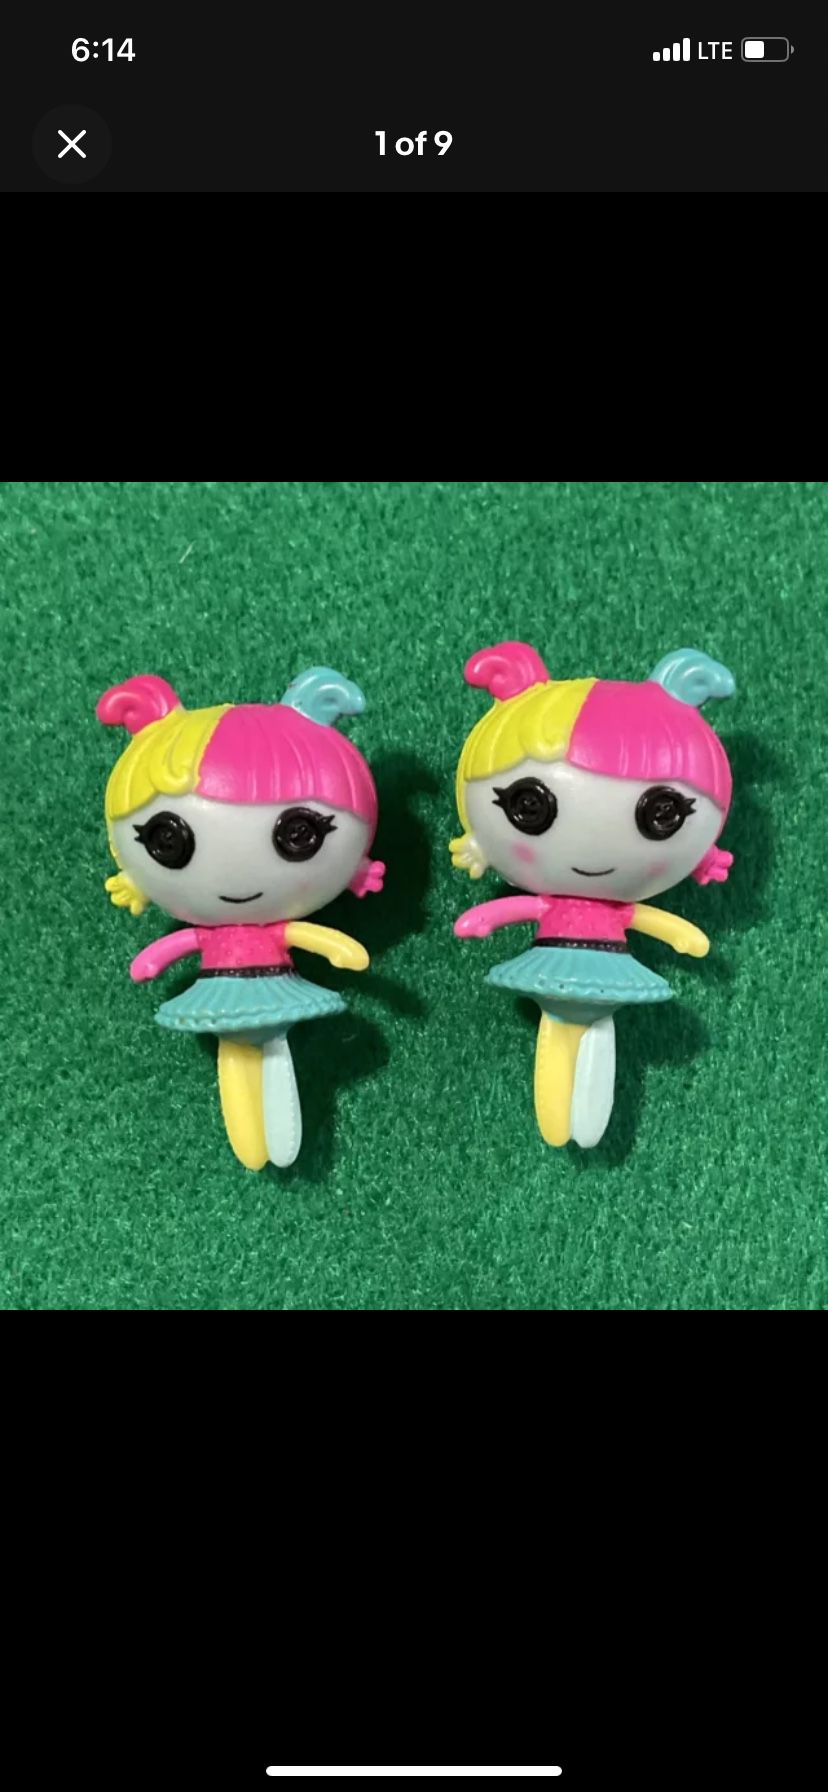 Mini Lalaloopsy Fairy Fern Mini 1.5" PVC Doll Lot Of 2 (G)